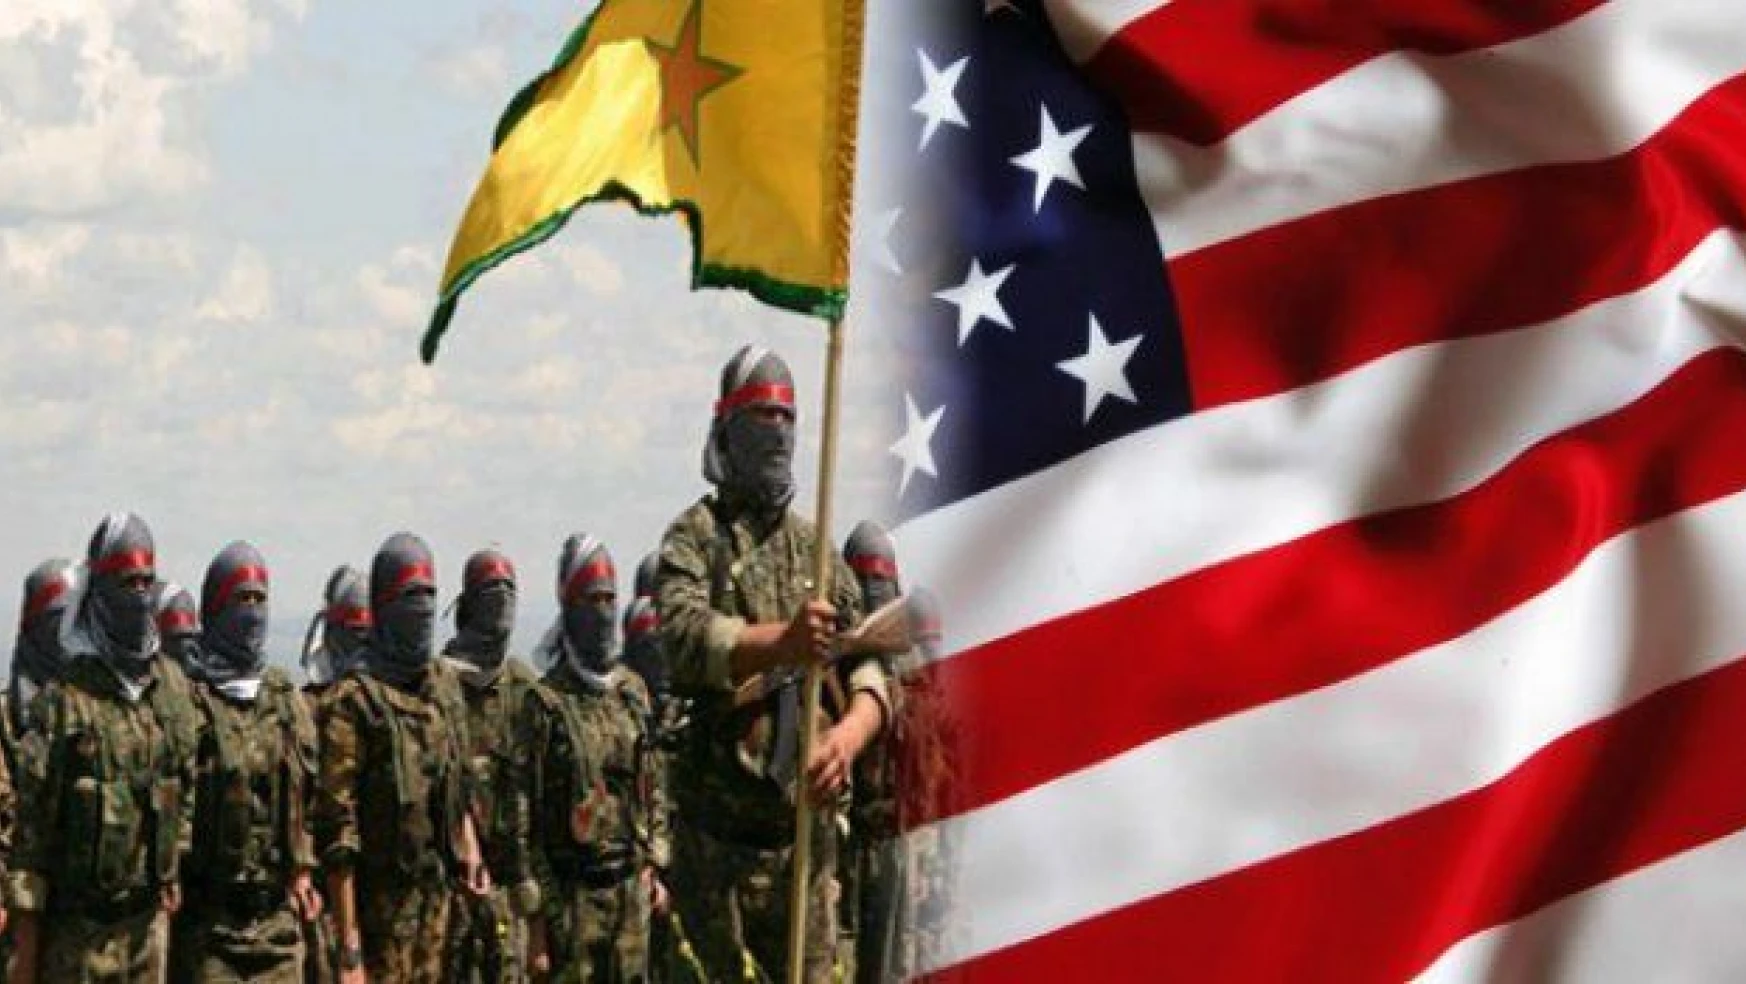 İşte PKK-PYD ilişkisi! ABD şimdi ne diyecek?